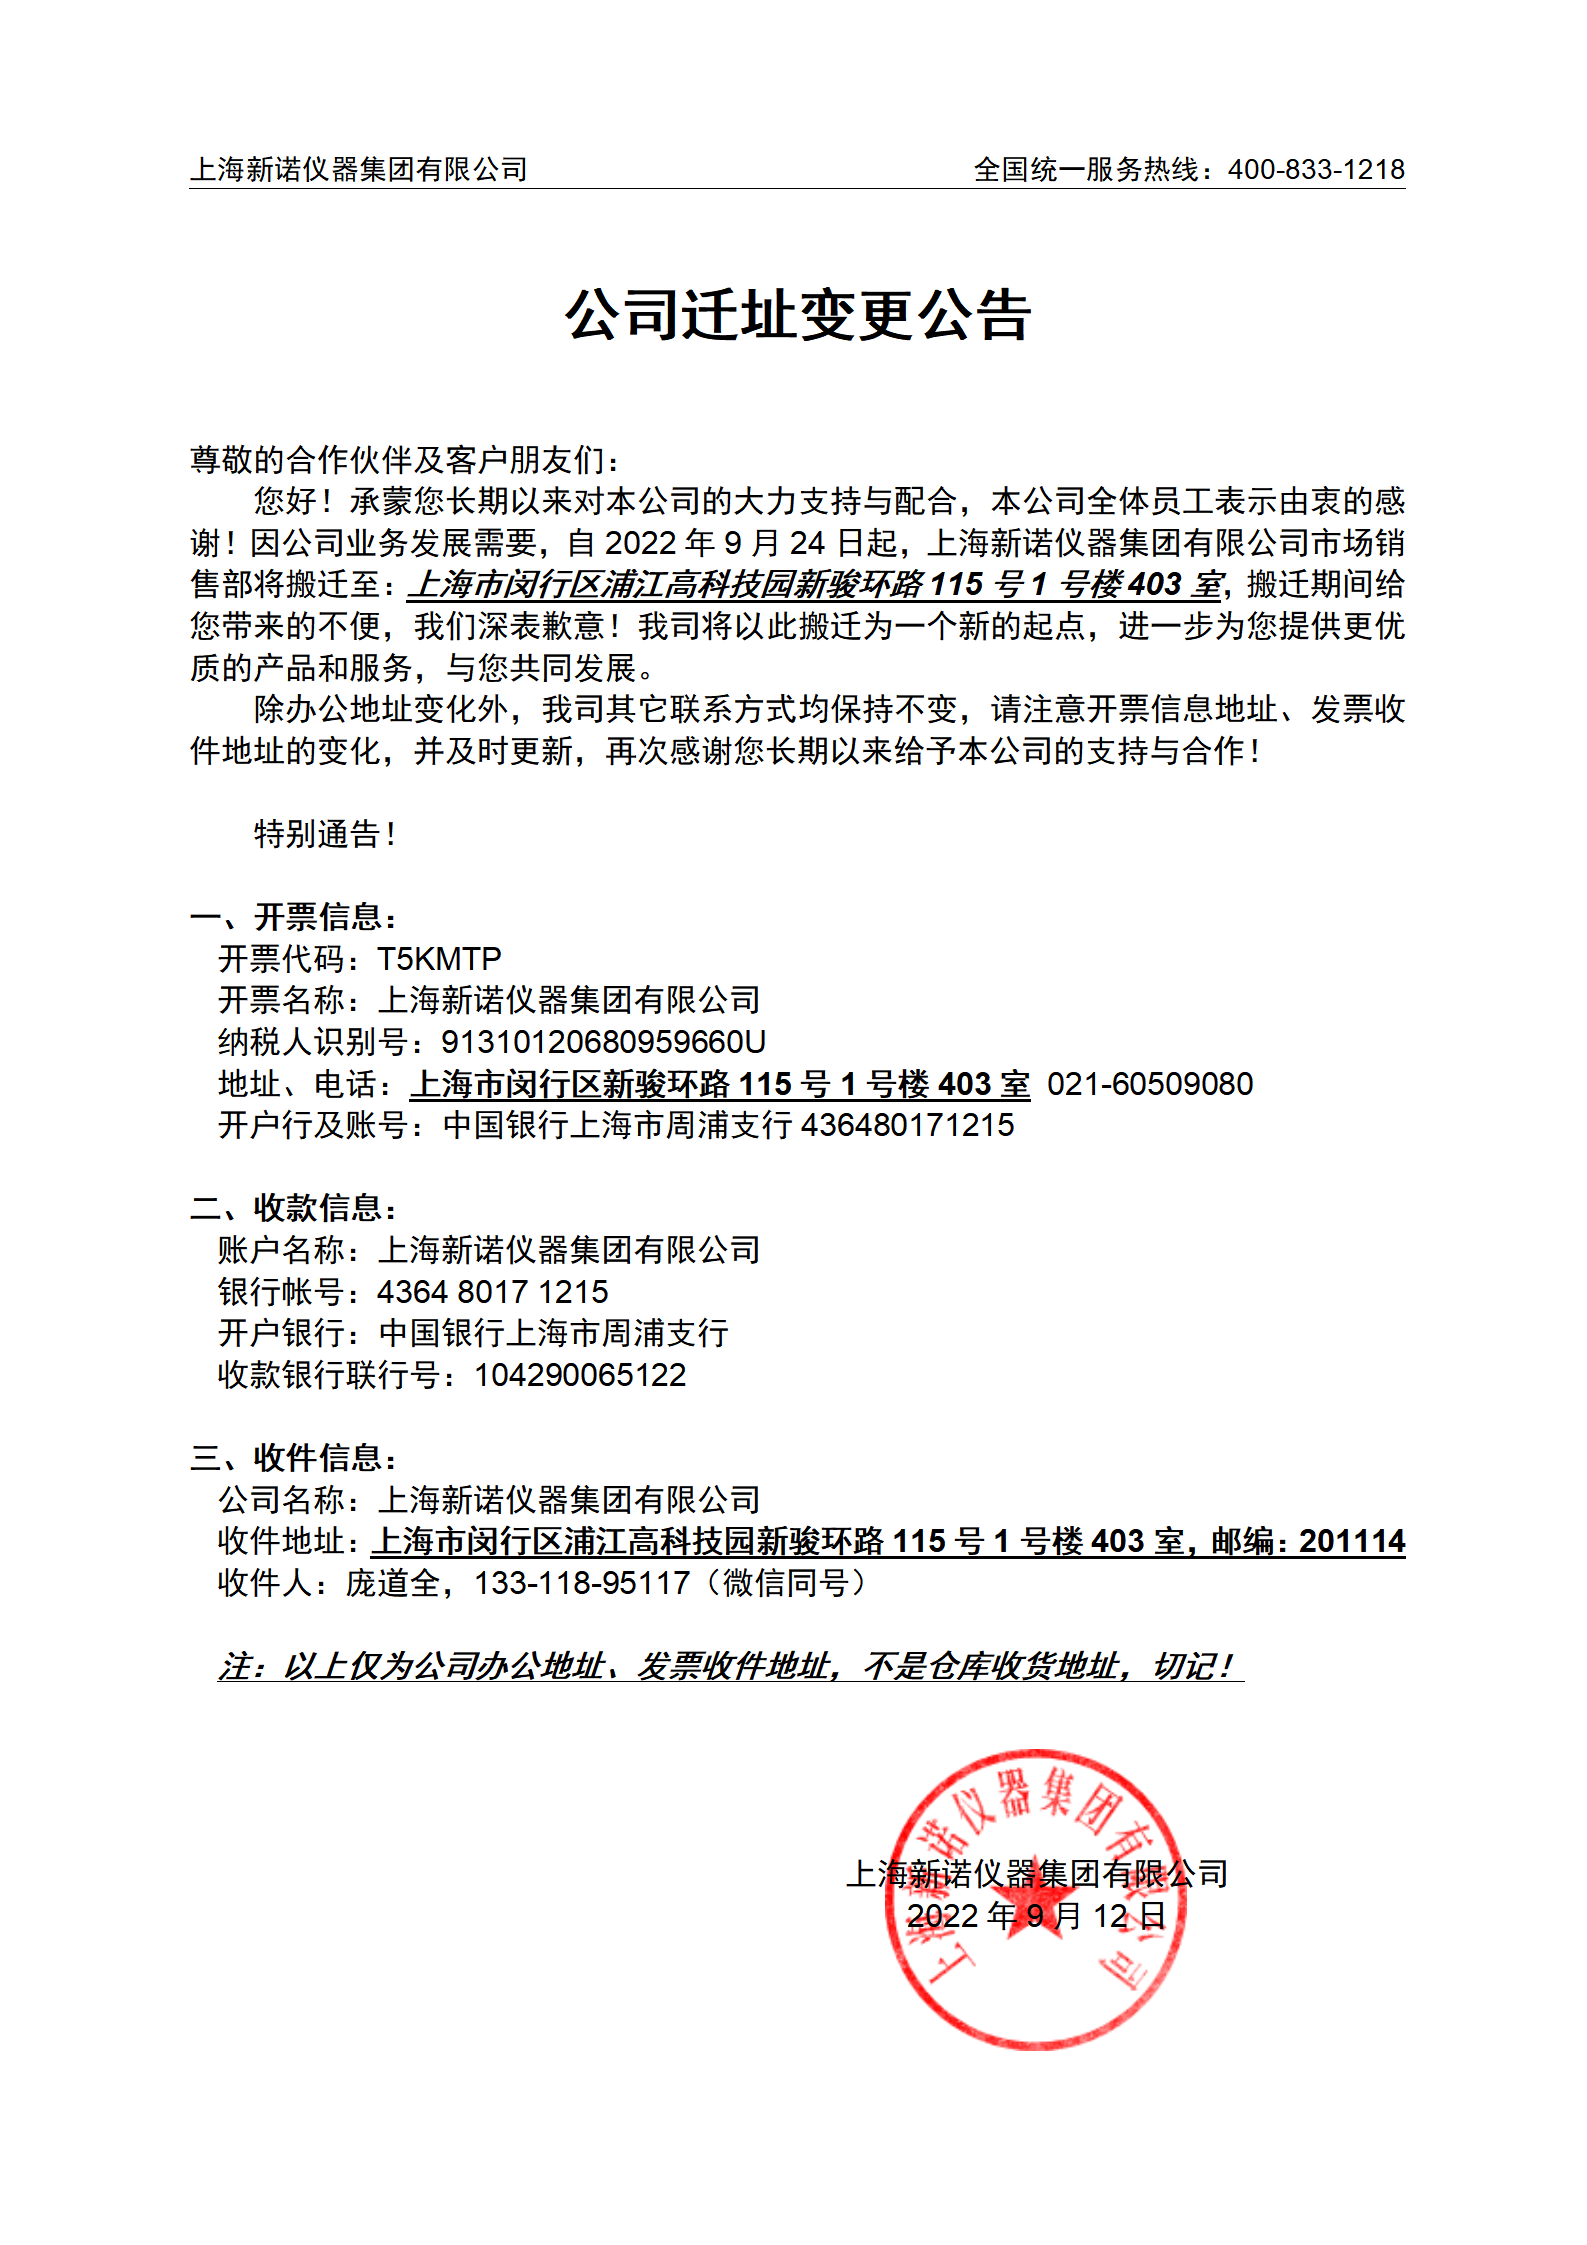 上海新诺仪器集团有限公司迁址变更公告